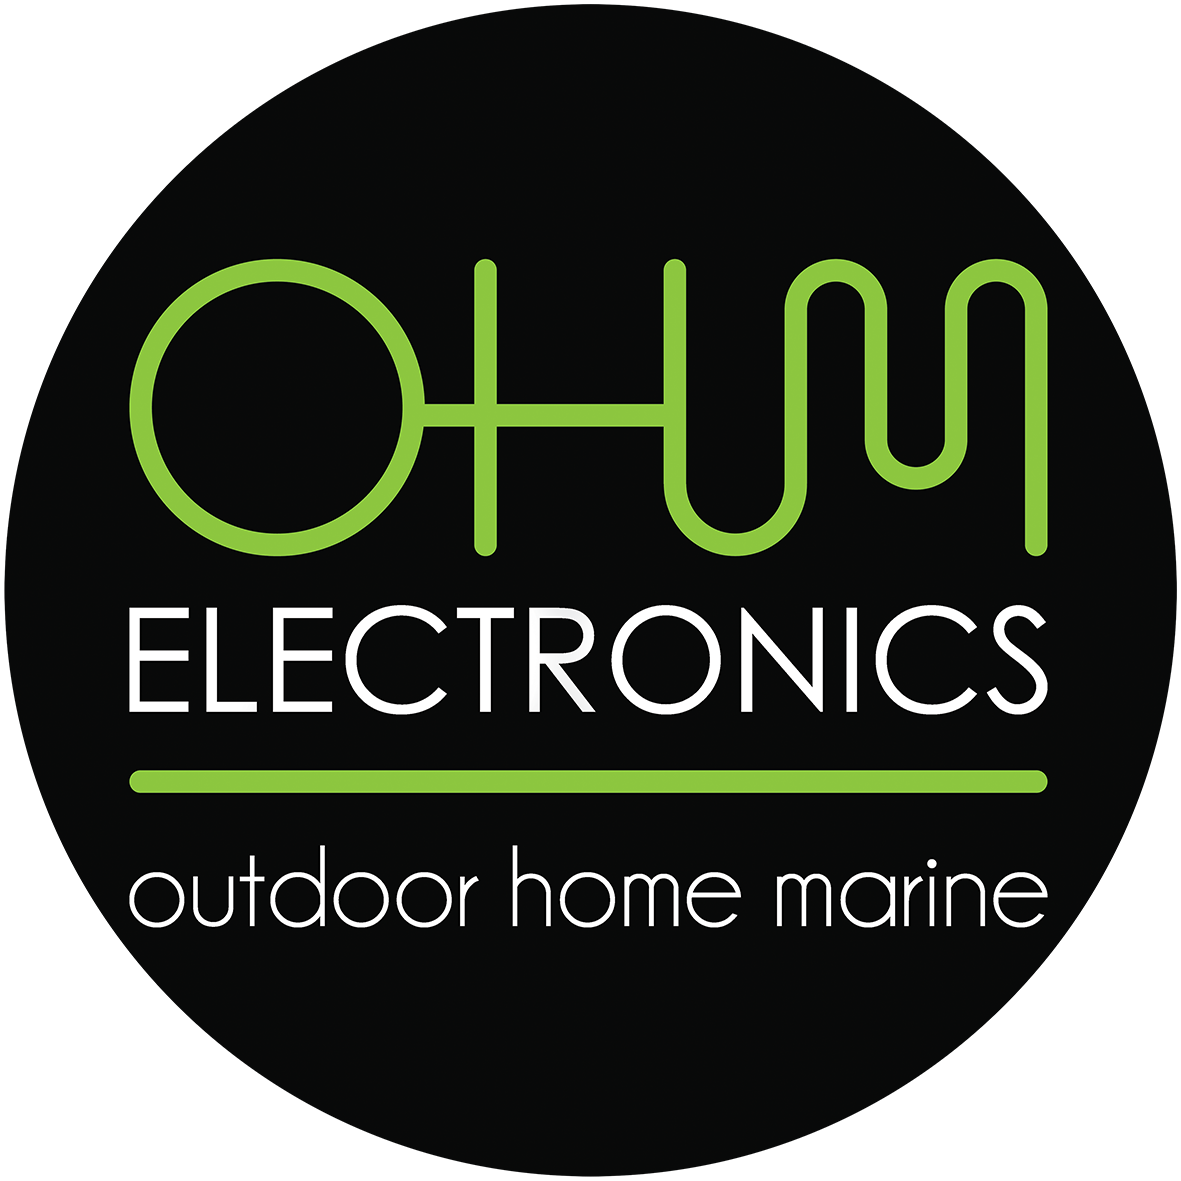 OHM Electronics